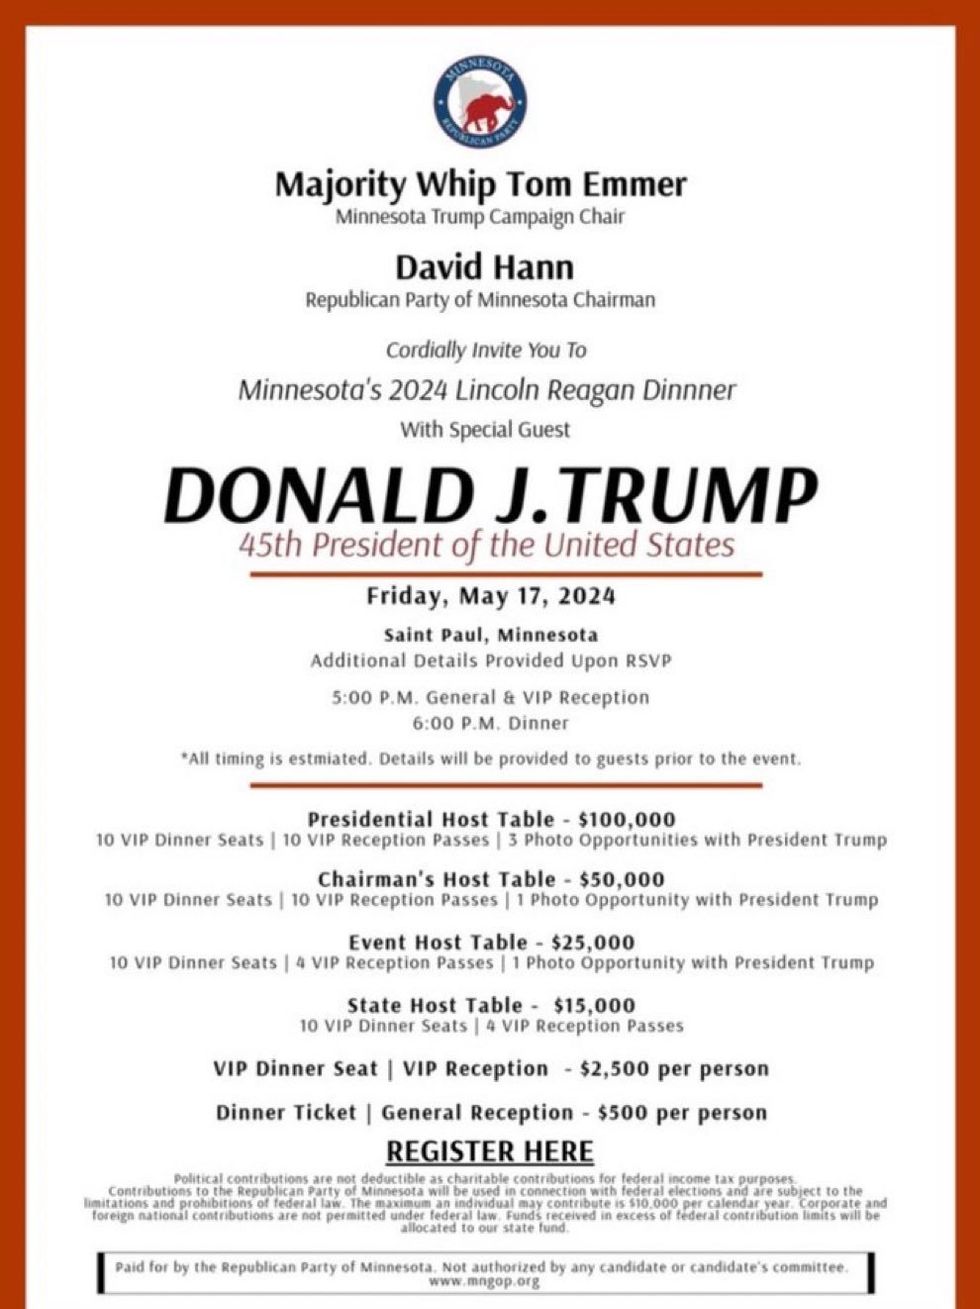 Flyer for Minnesota GOP fundraiser